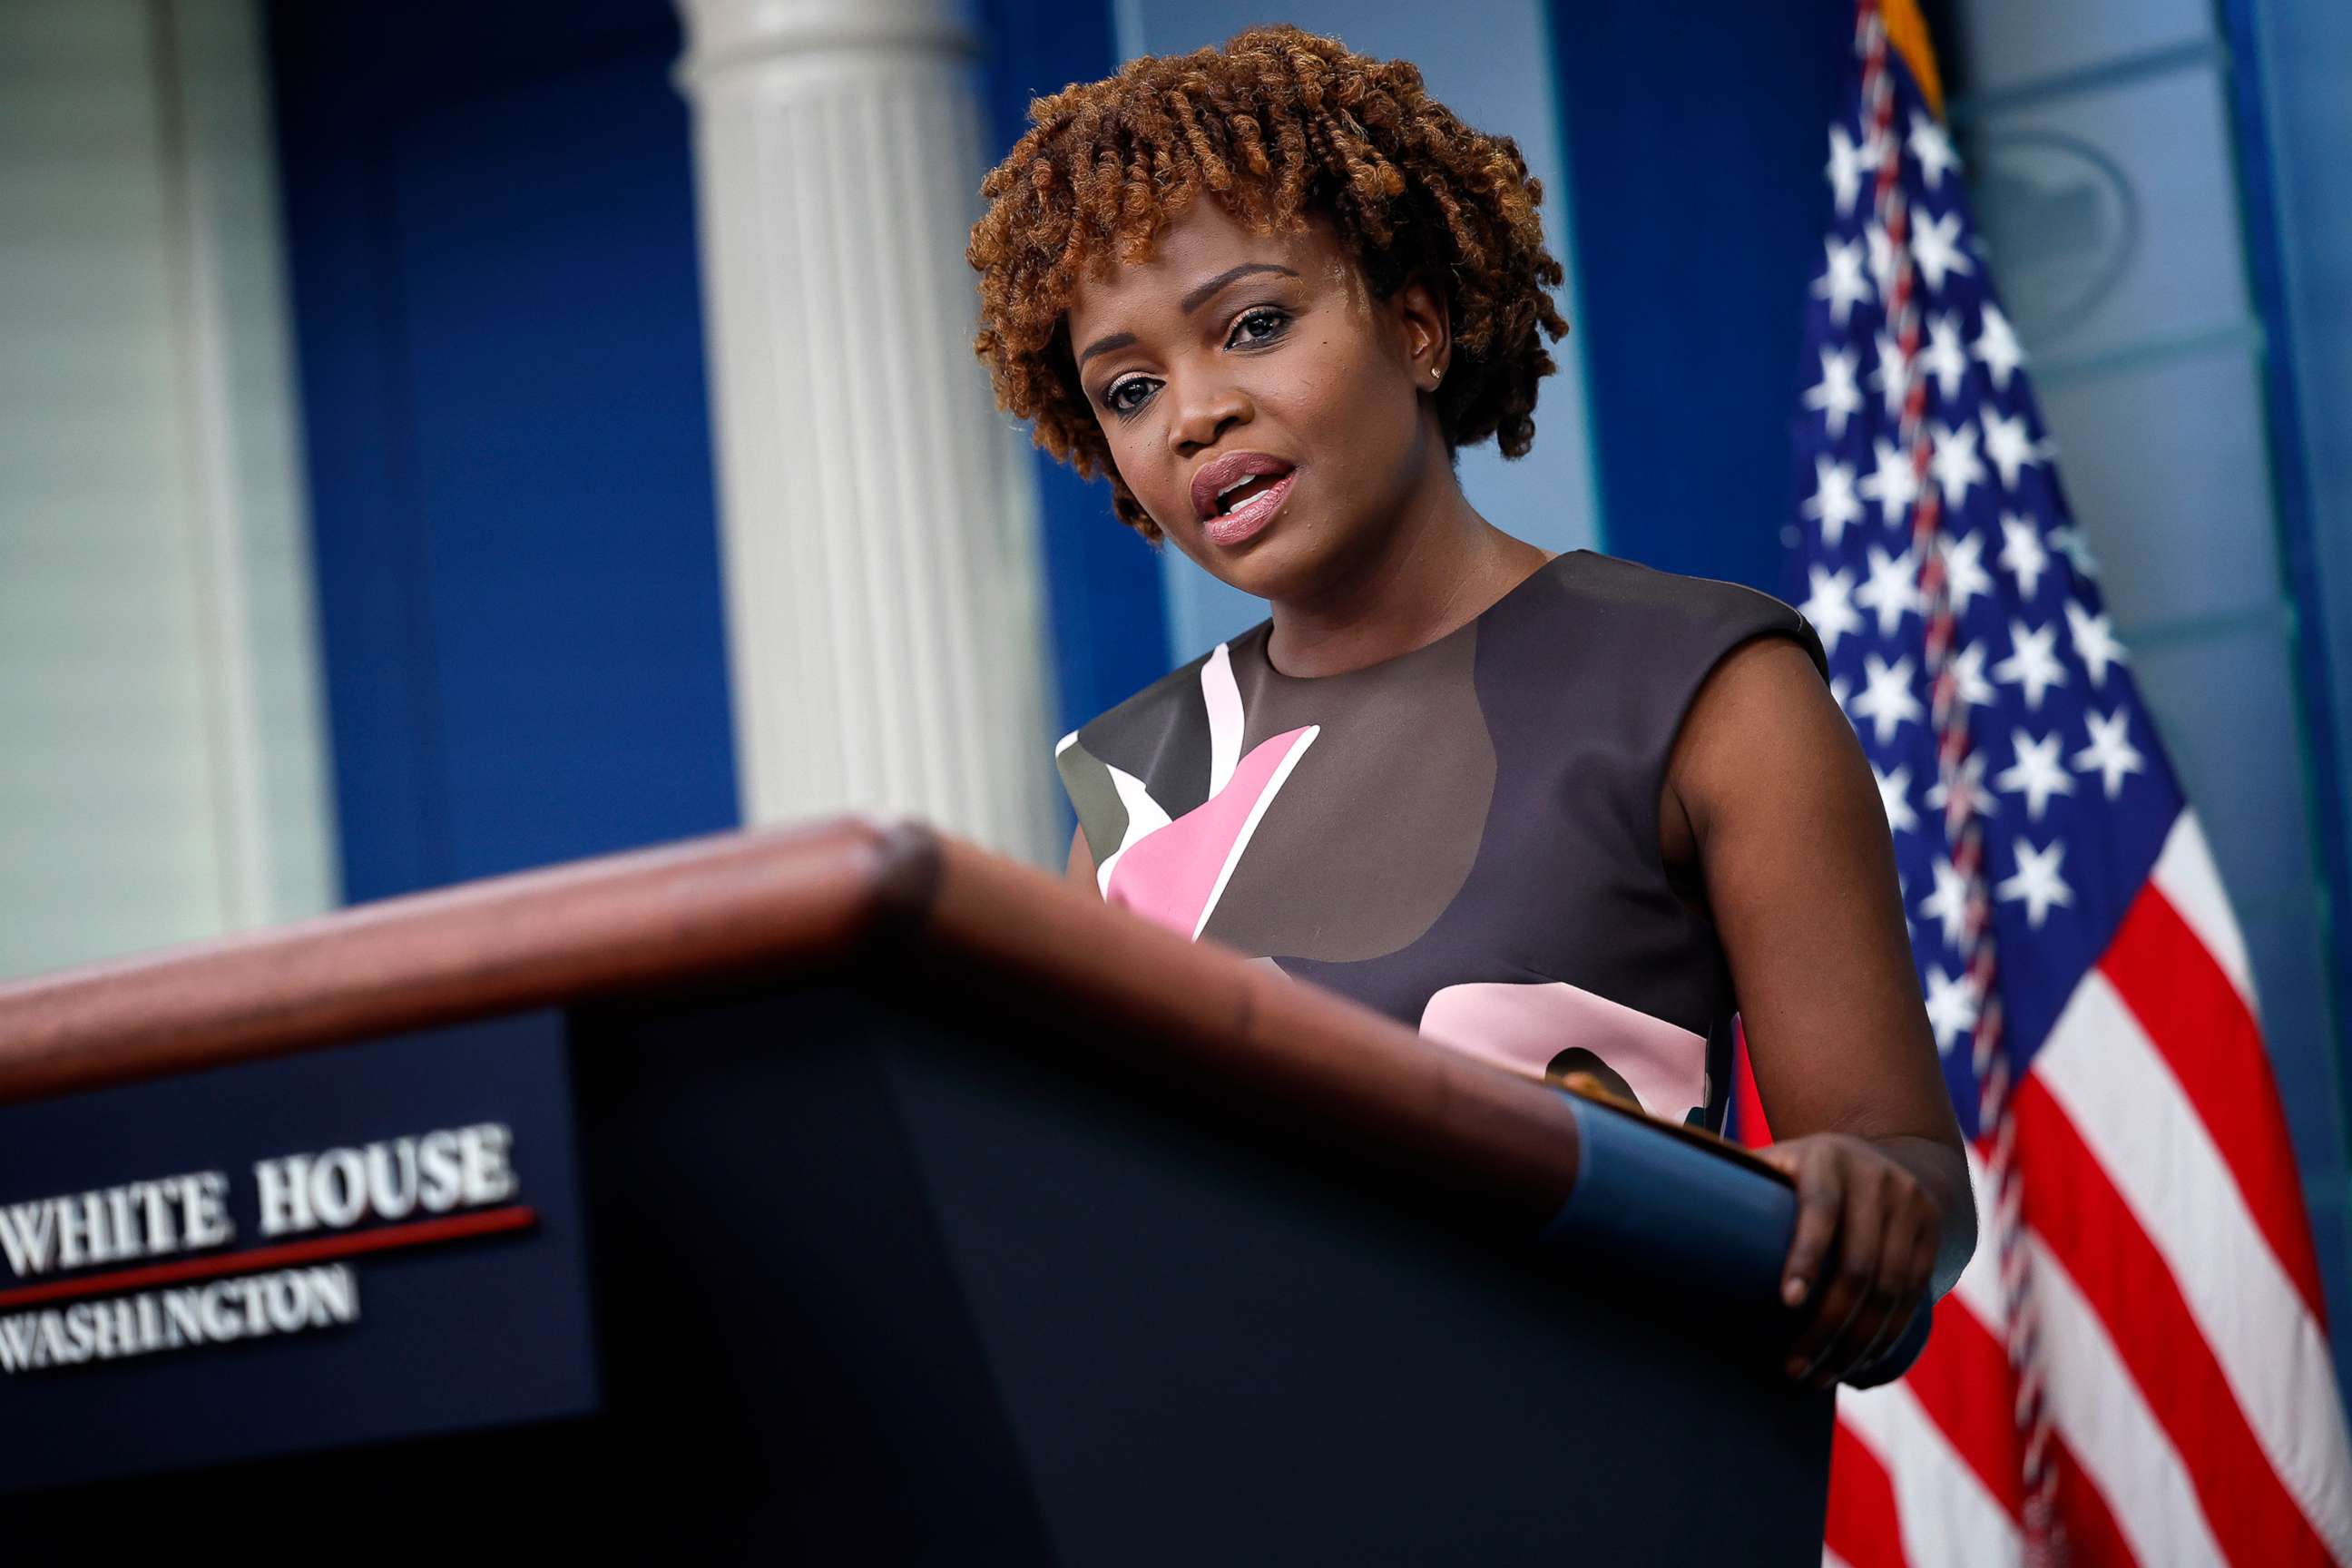 WATCH: White House press secretary Karine Jean-Pierre speaks on